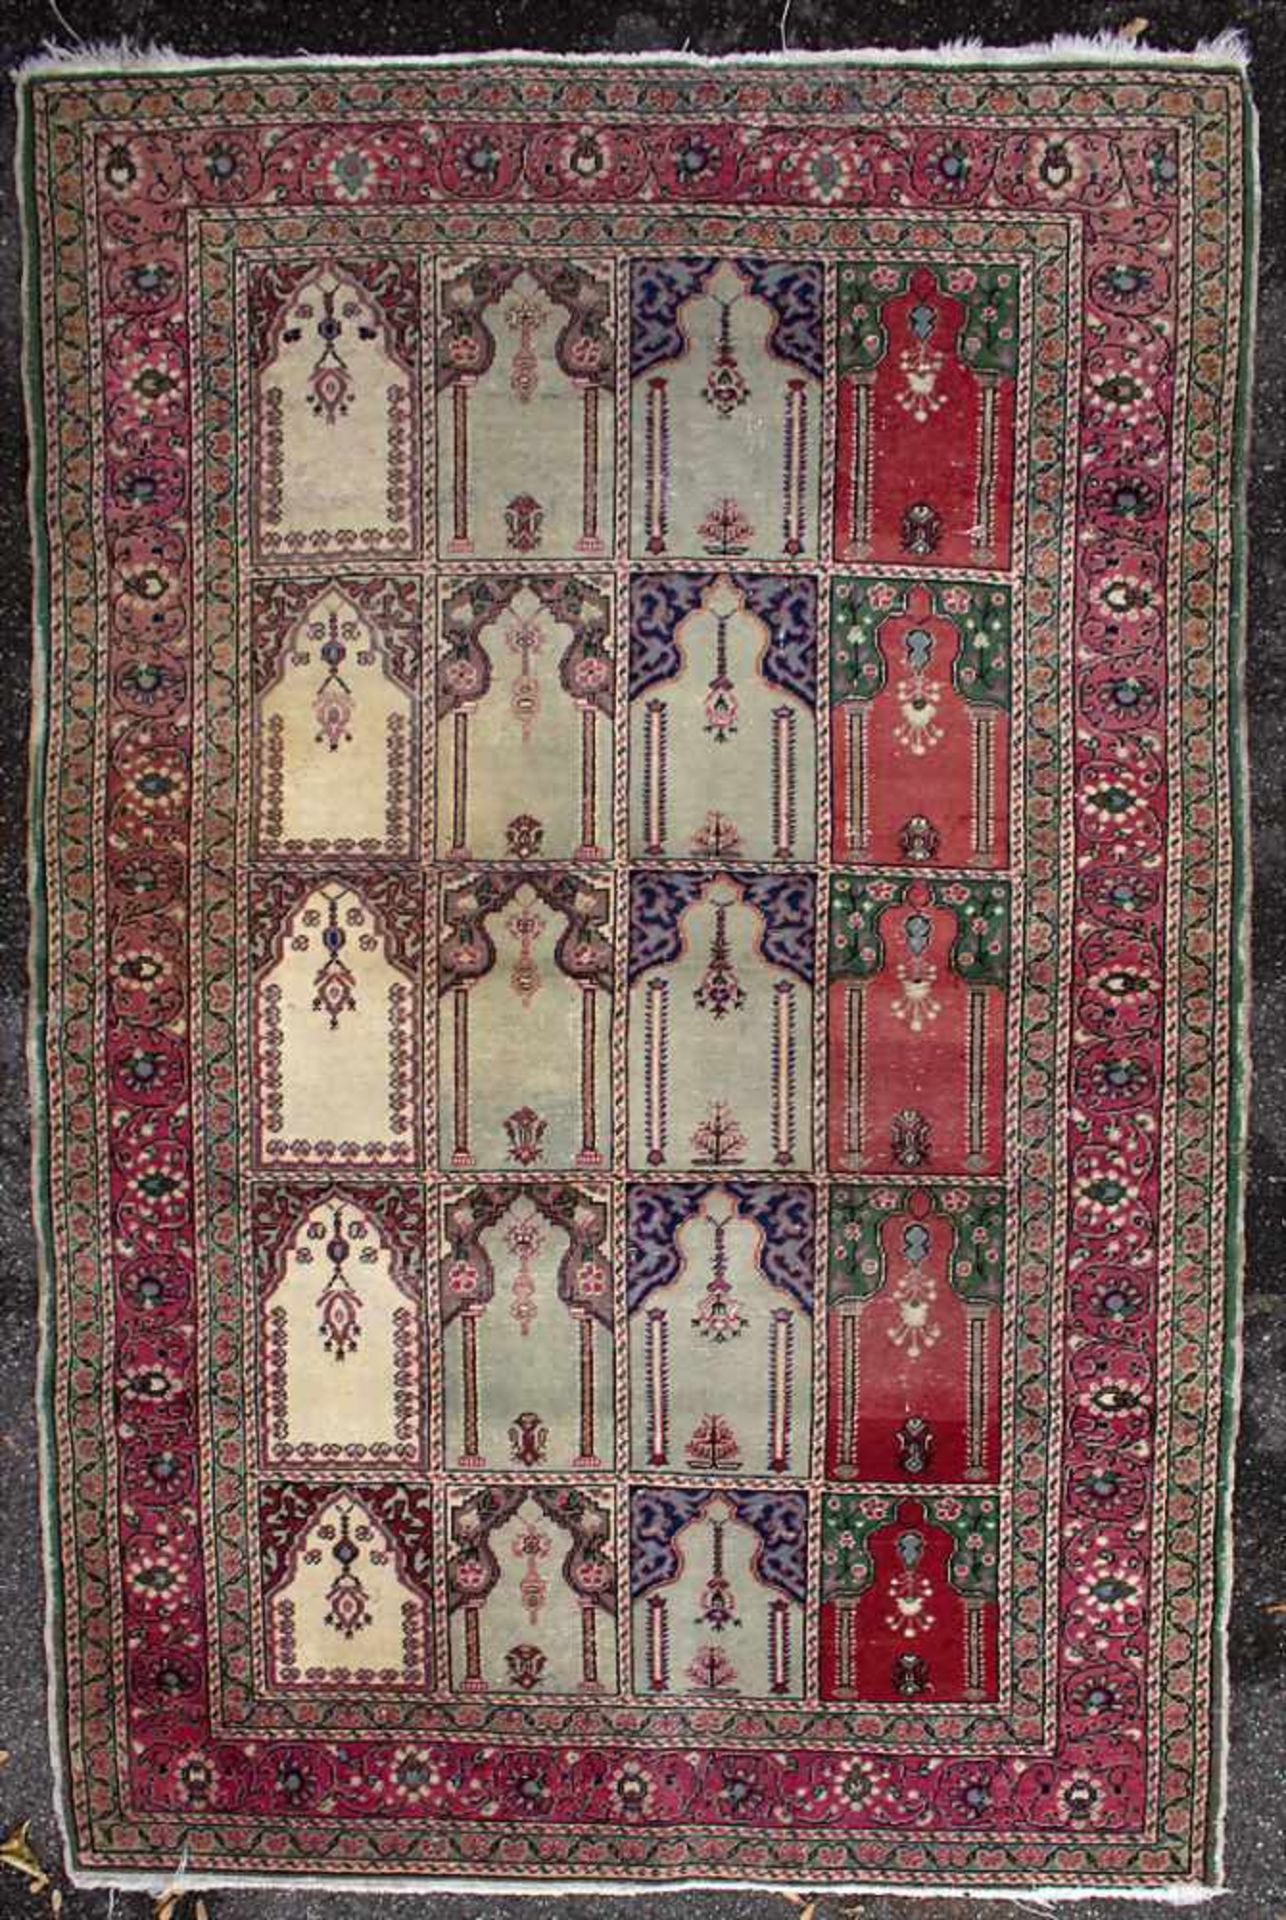 Orienttepppich mit Gebetsnischen / An oriental carpet with mihrabsMaterial: Wolle auf Baumwolle, - Image 3 of 11